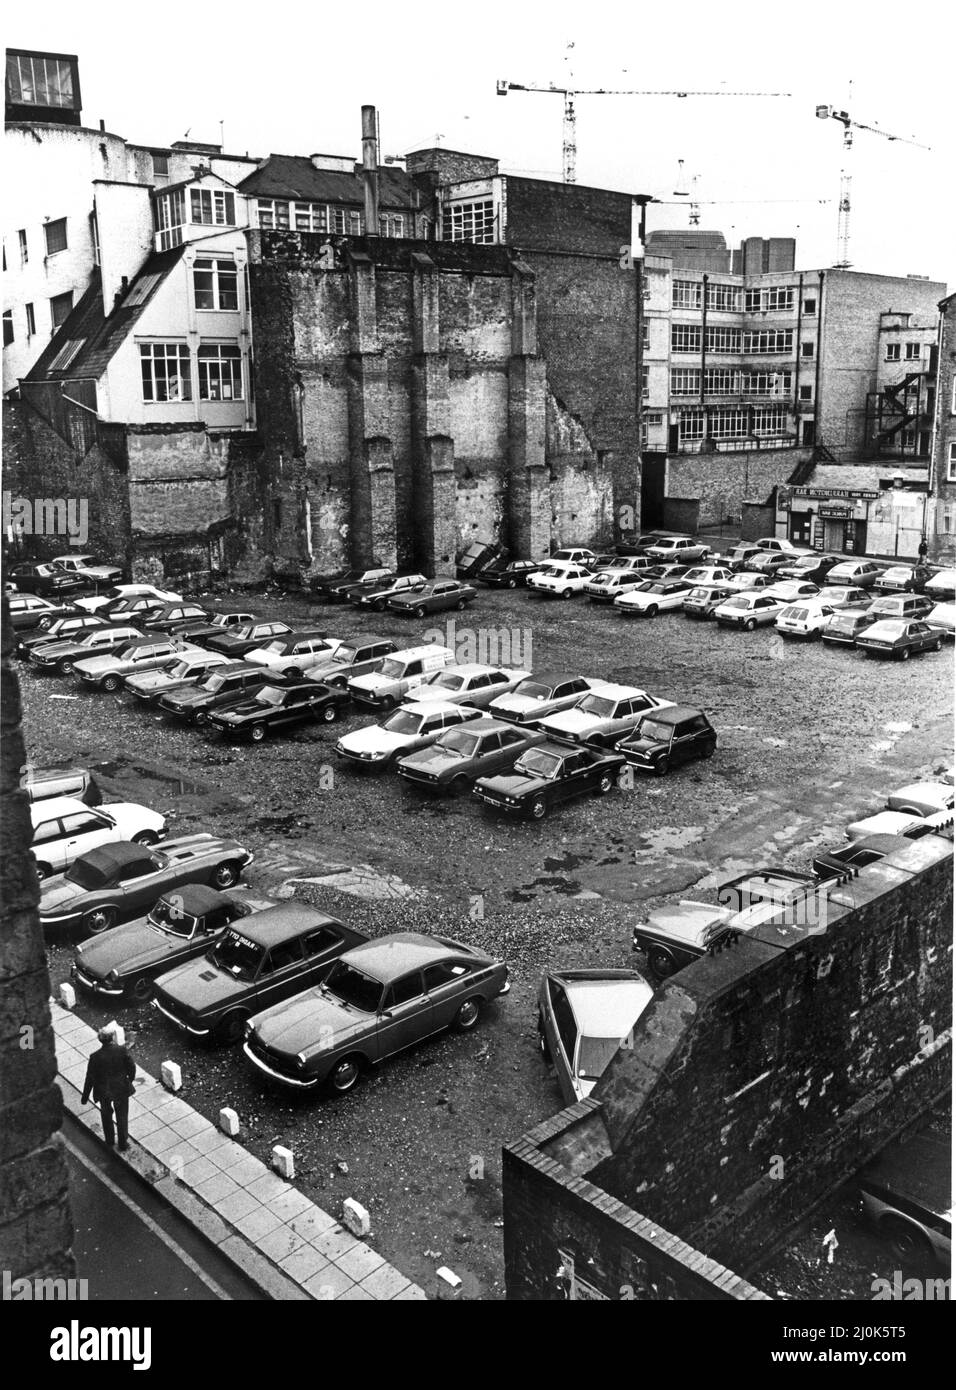 Matthew Street in Liverpool, England.in der Matthew Street befand sich der berühmte Cavern Club, in dem die Beatles ihre frühen Shows spielten. Bild aufgenommen am 8.. Dezember 1981 Stockfoto